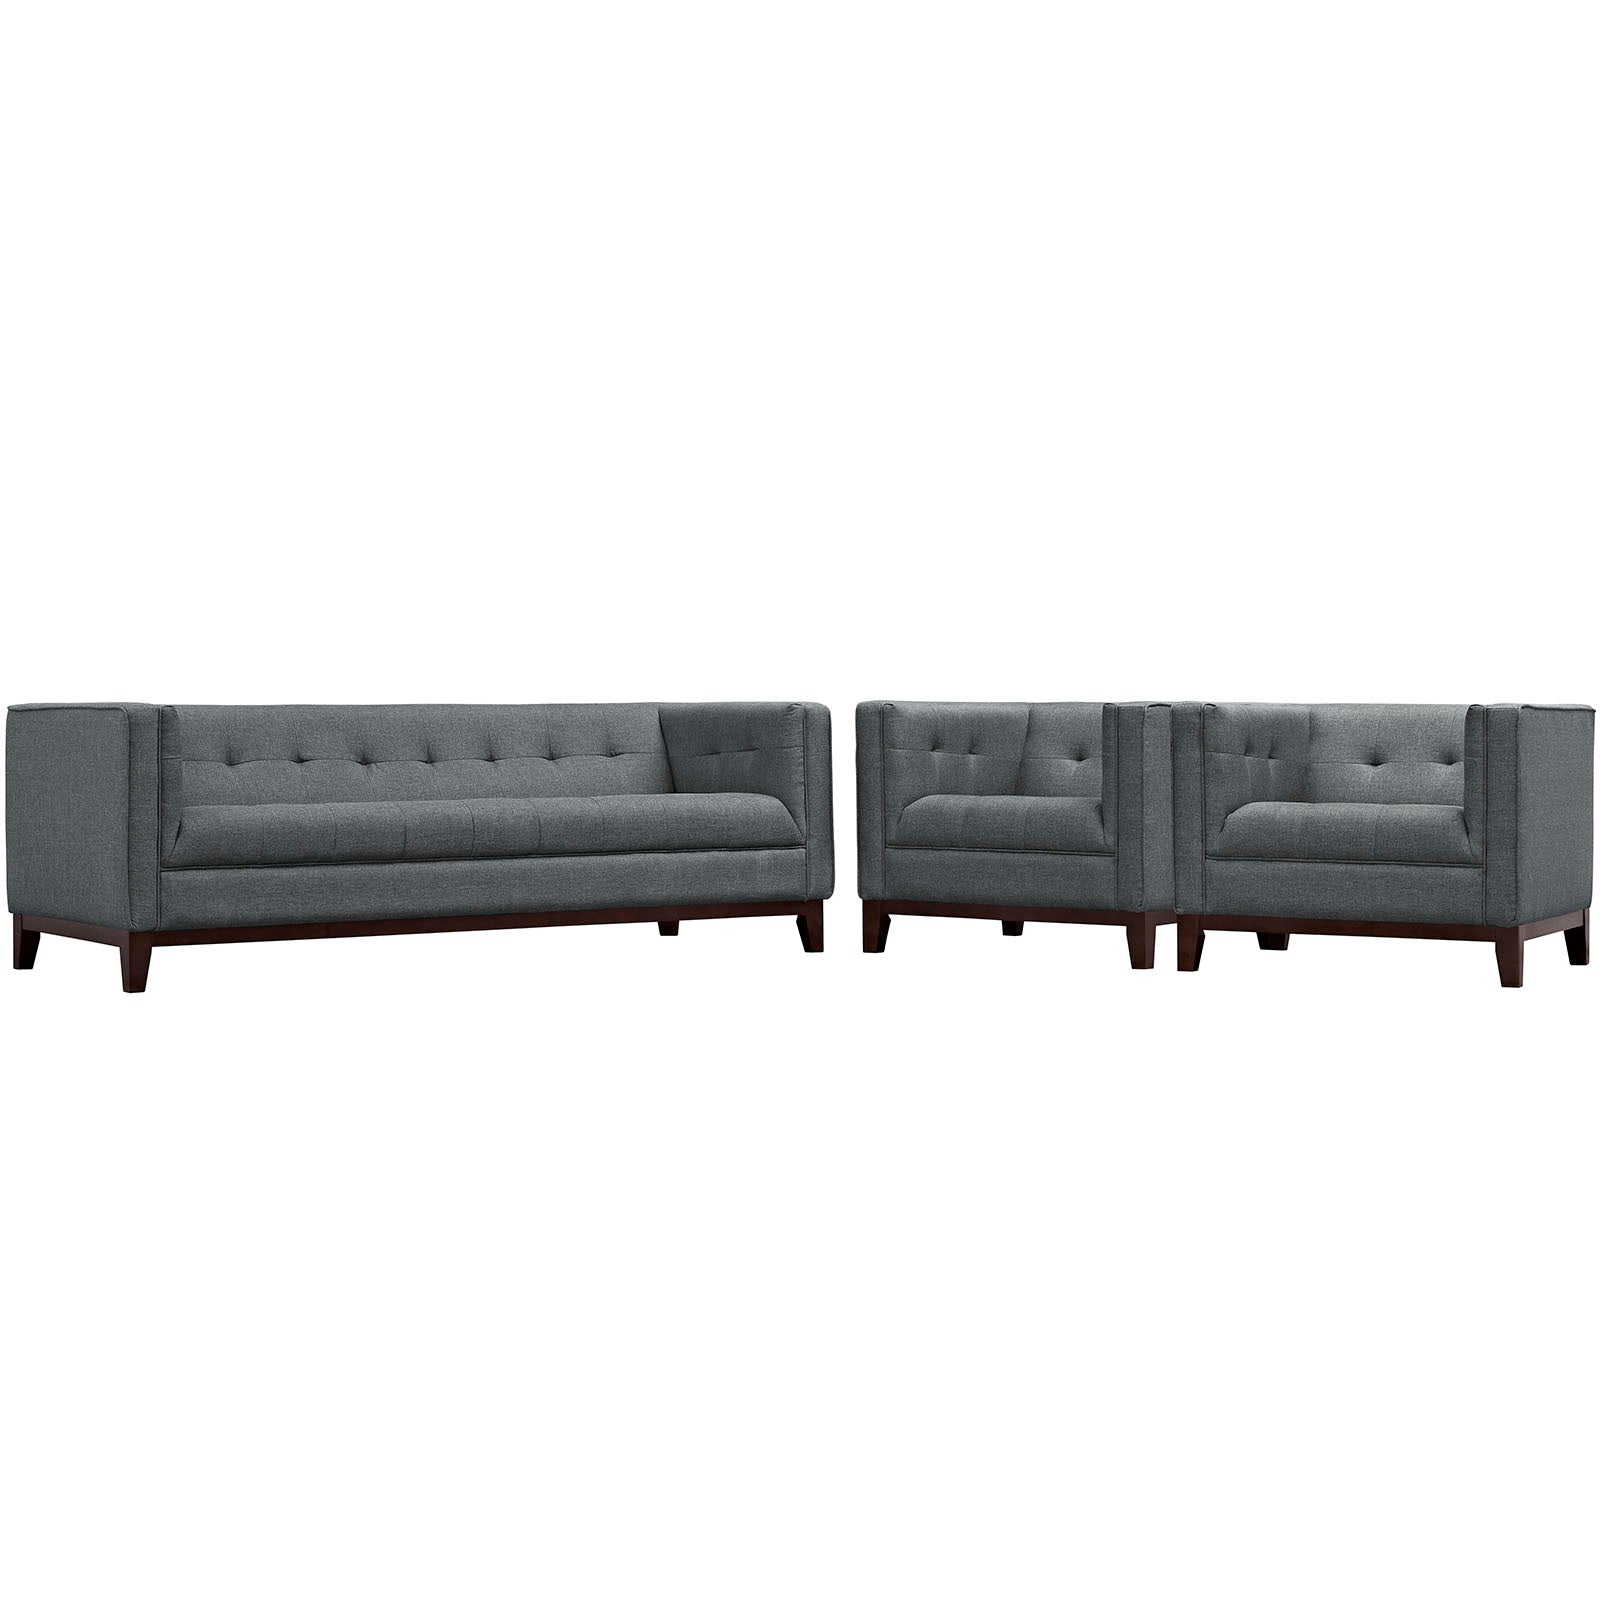 Modway Living Room Sets - Serve Living Room Set Set Of 3 Gray